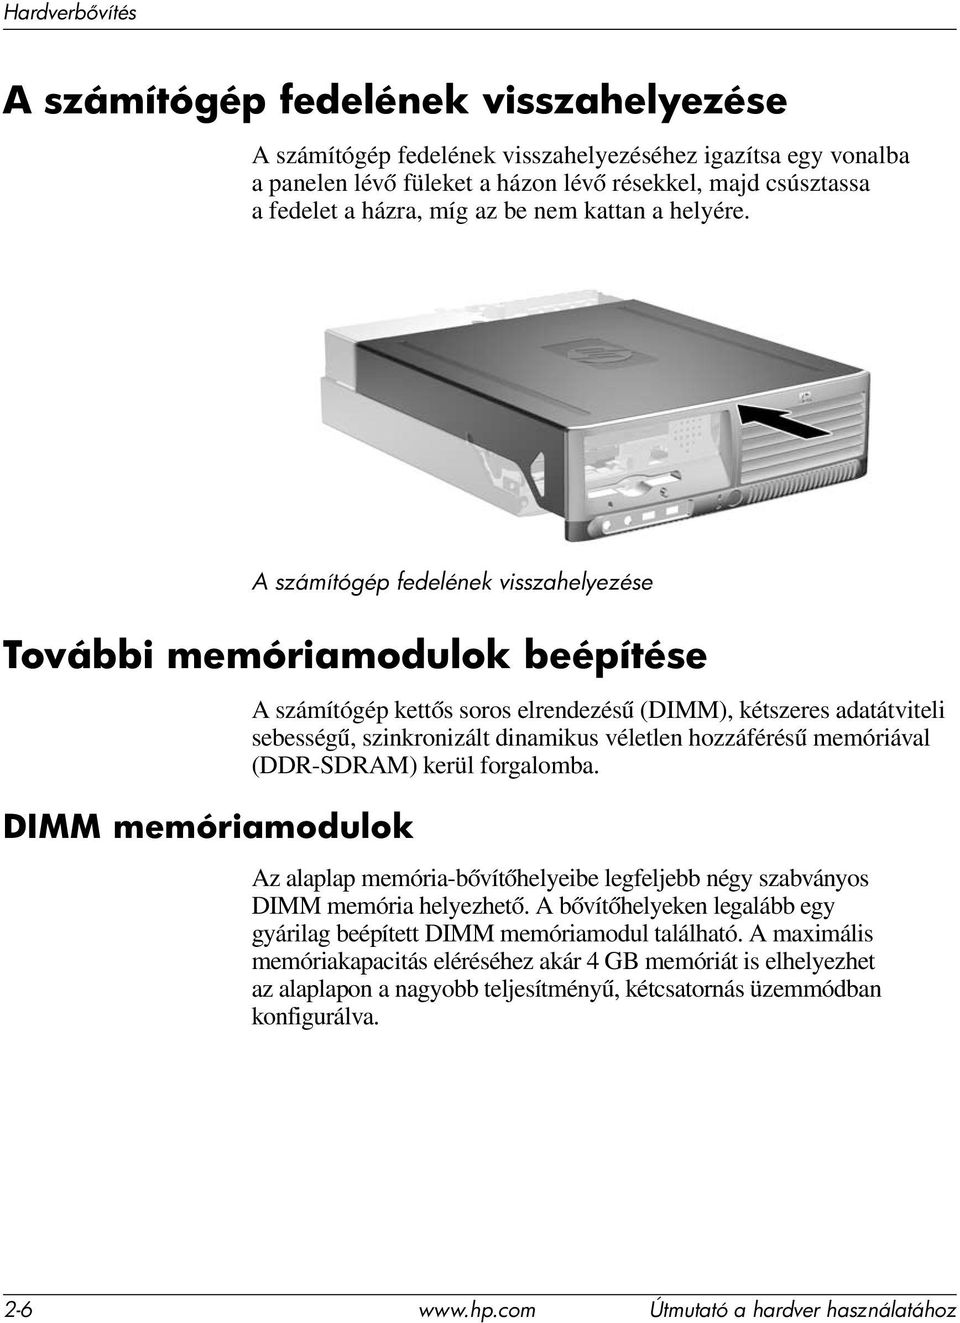 A számítógép fedelének visszahelyezése További memóriamodulok beépítése DIMM memóriamodulok A számítógép kettős soros elrendezésű (DIMM), kétszeres adatátviteli sebességű, szinkronizált dinamikus